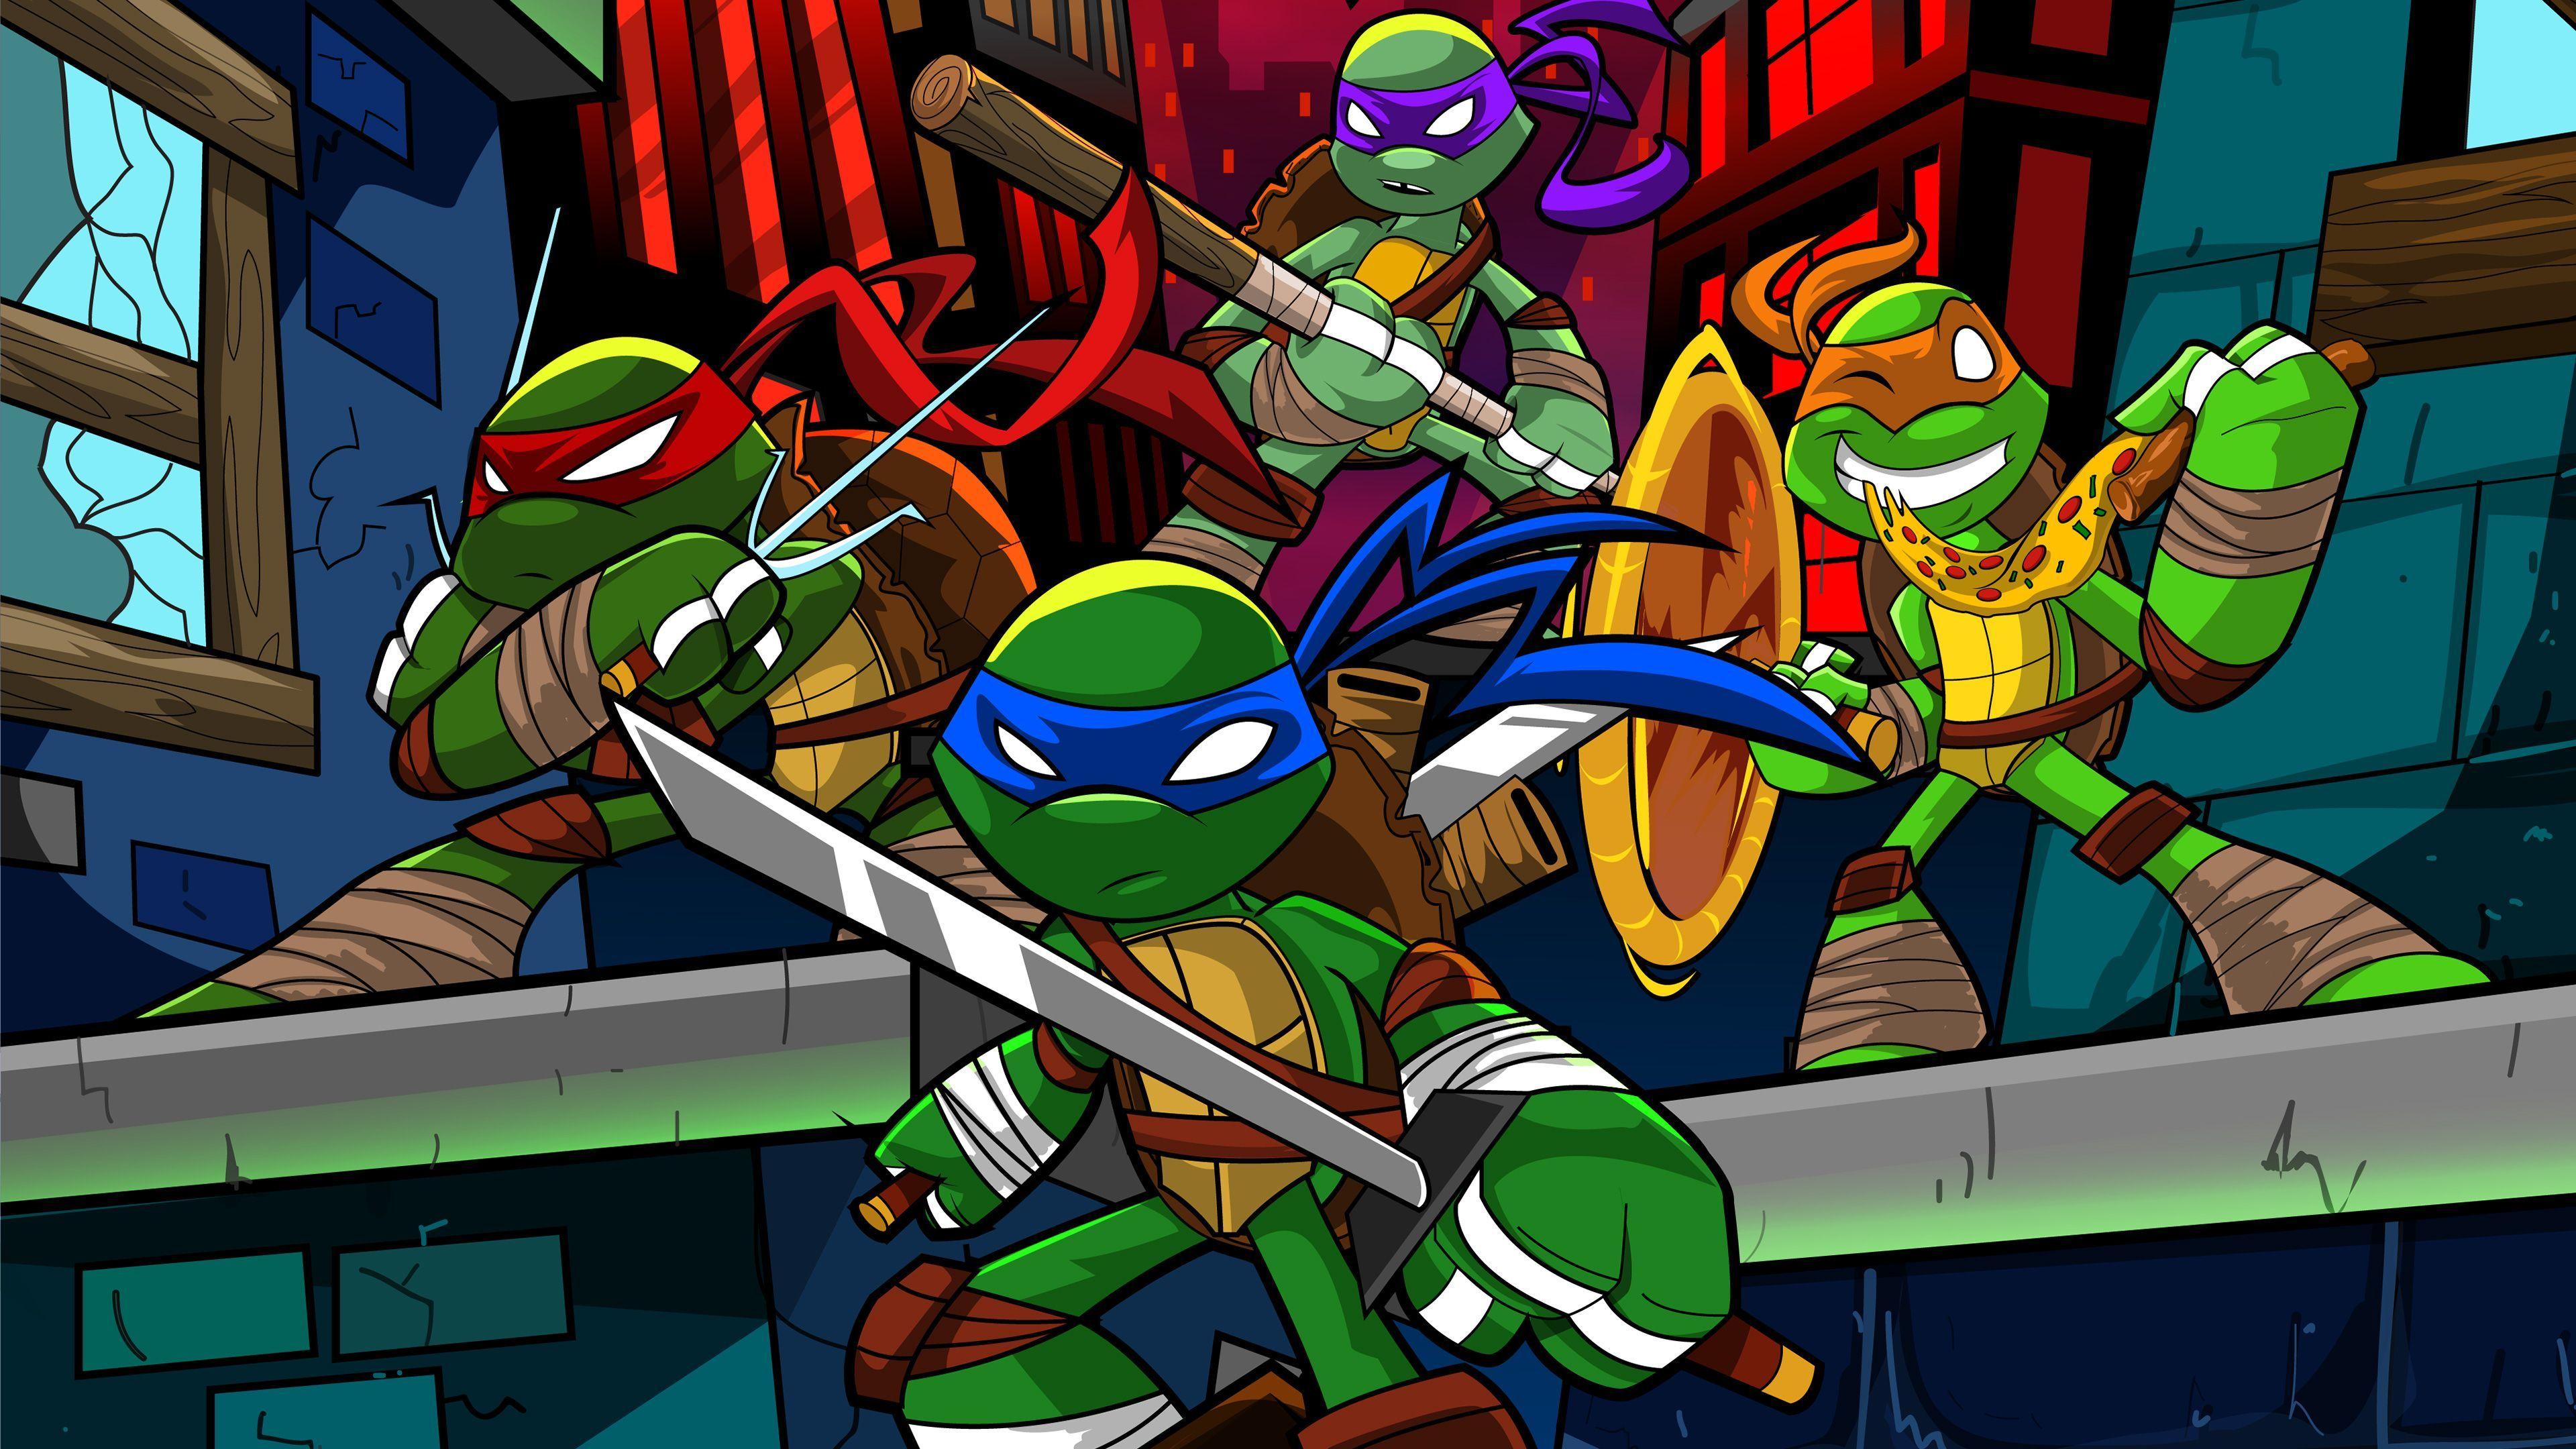 Mutant Ninja Turtles Wallpapers Top Free Mutant Ninja Turtles Backgrounds Wallpaperaccess 2575